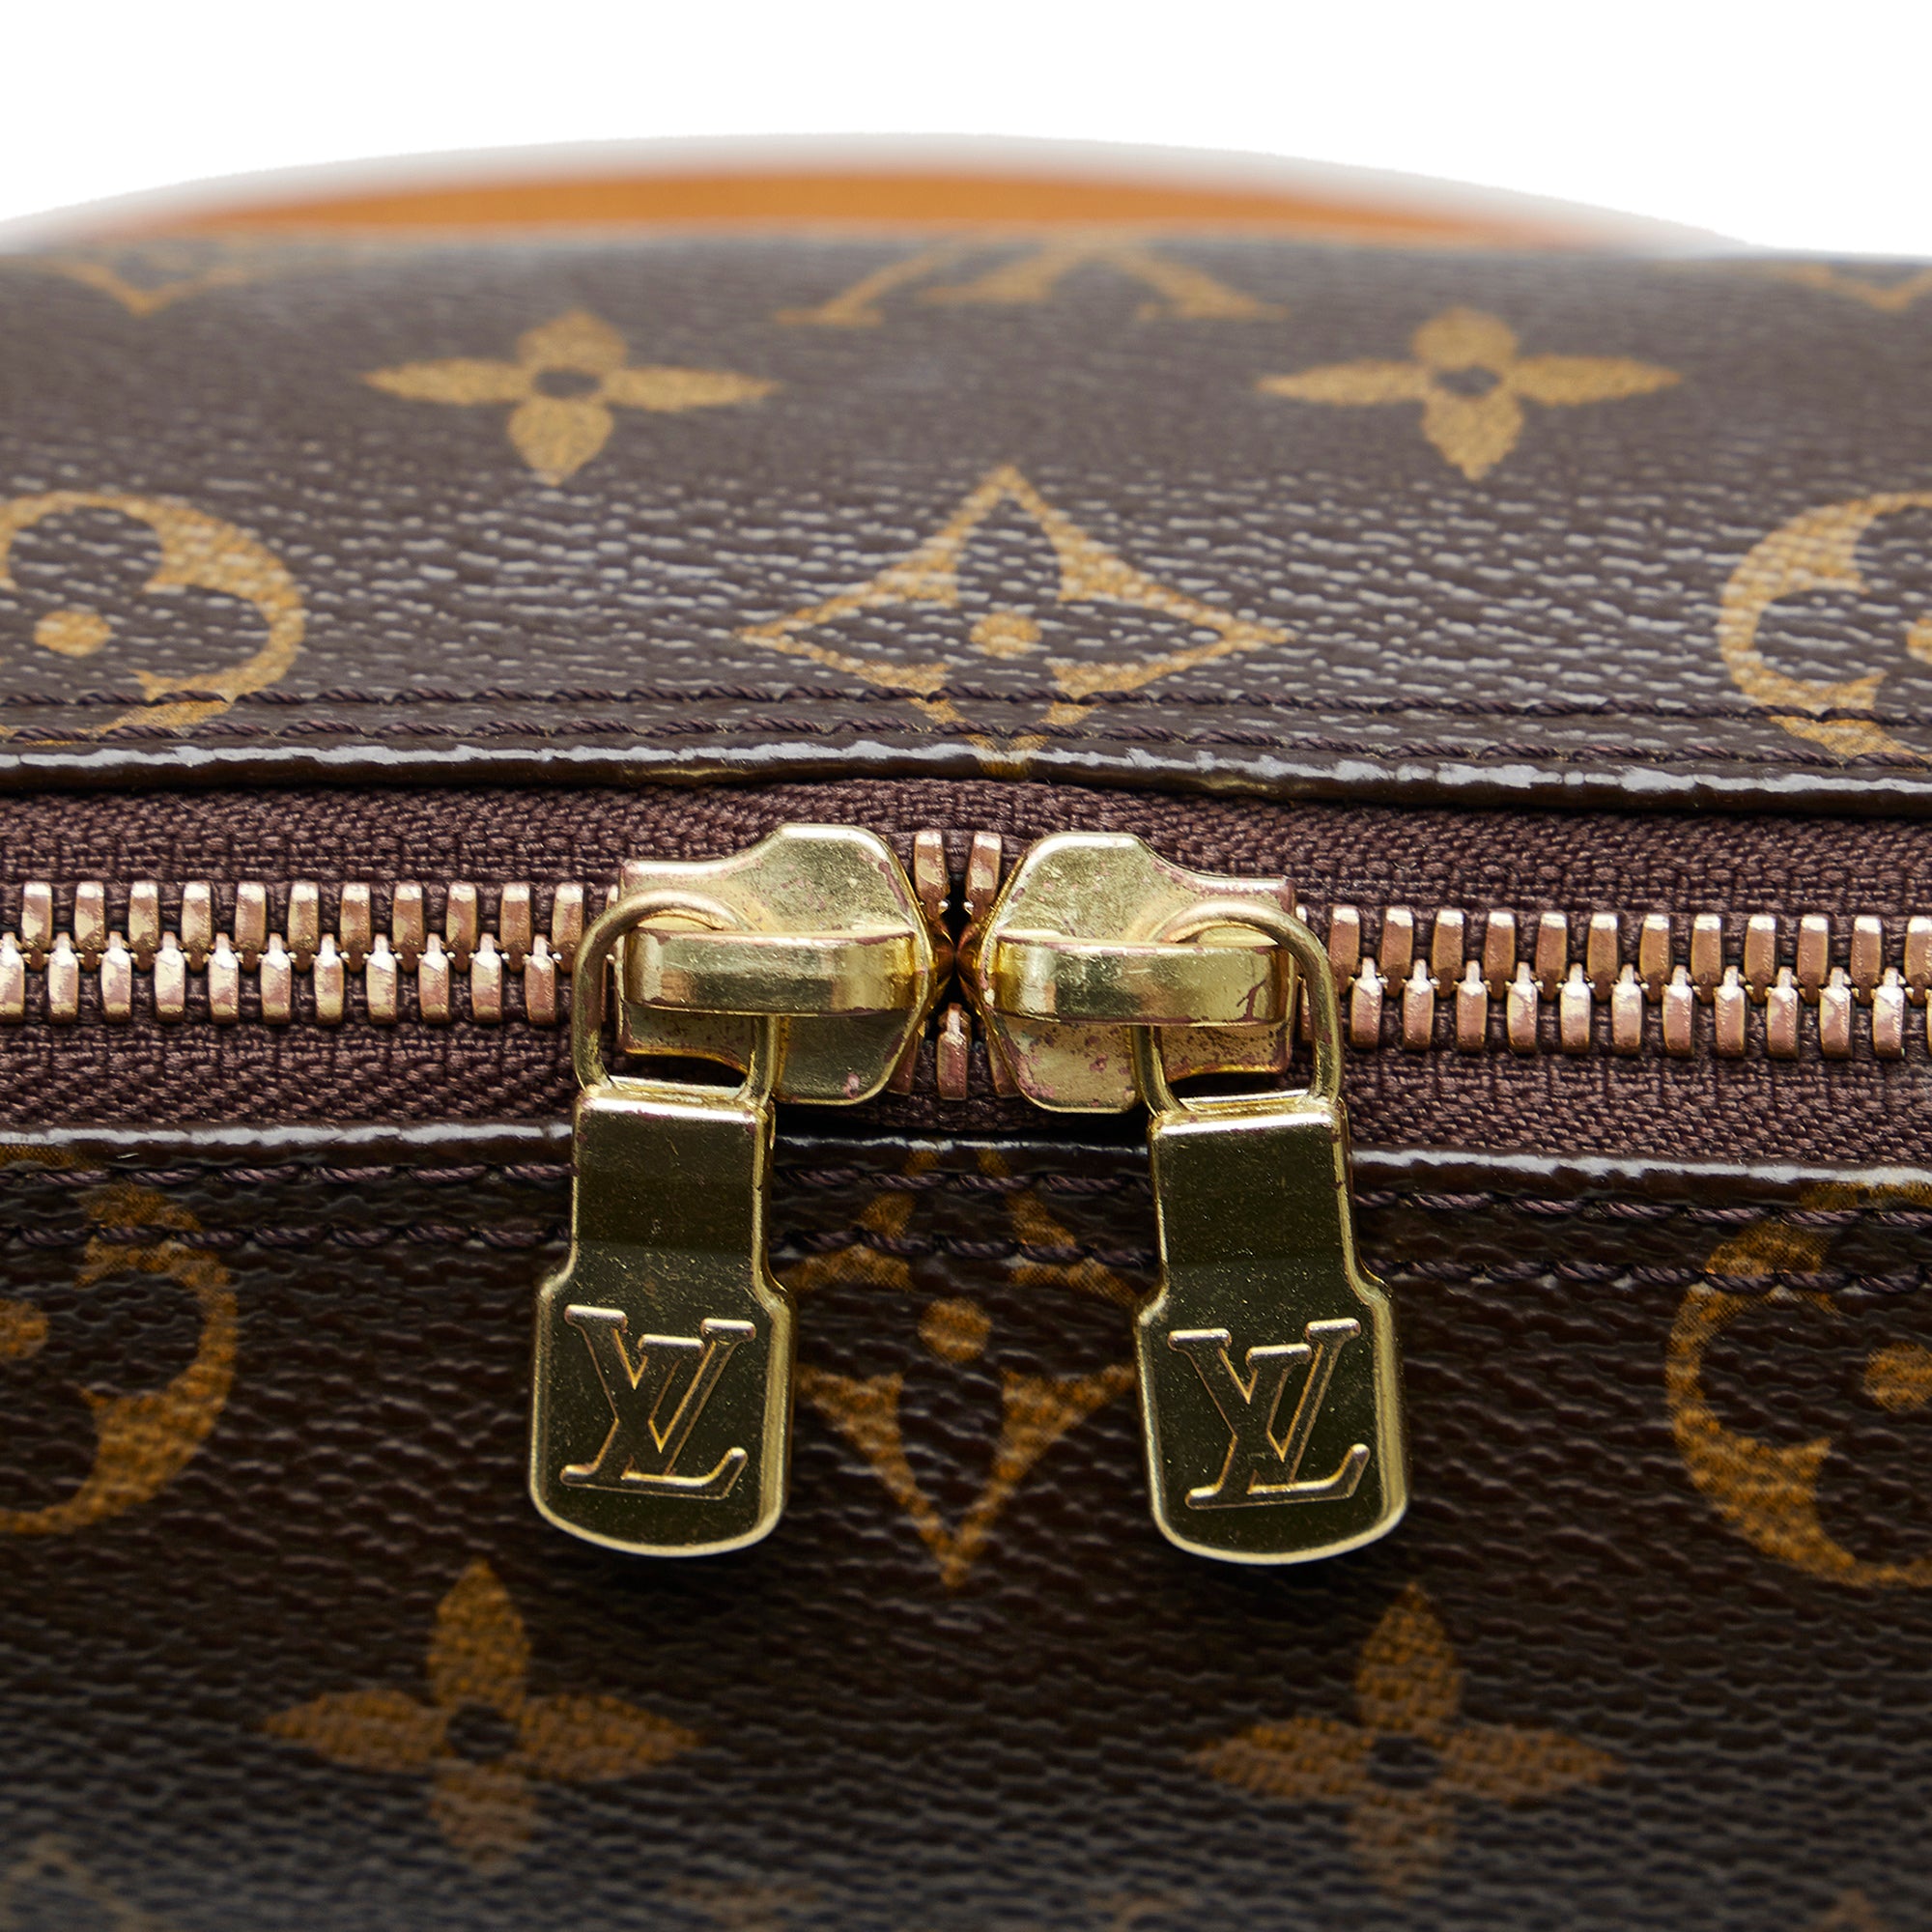 Louis Vuitton, Bags, Authentic Louis Vuitton Coussin Gm